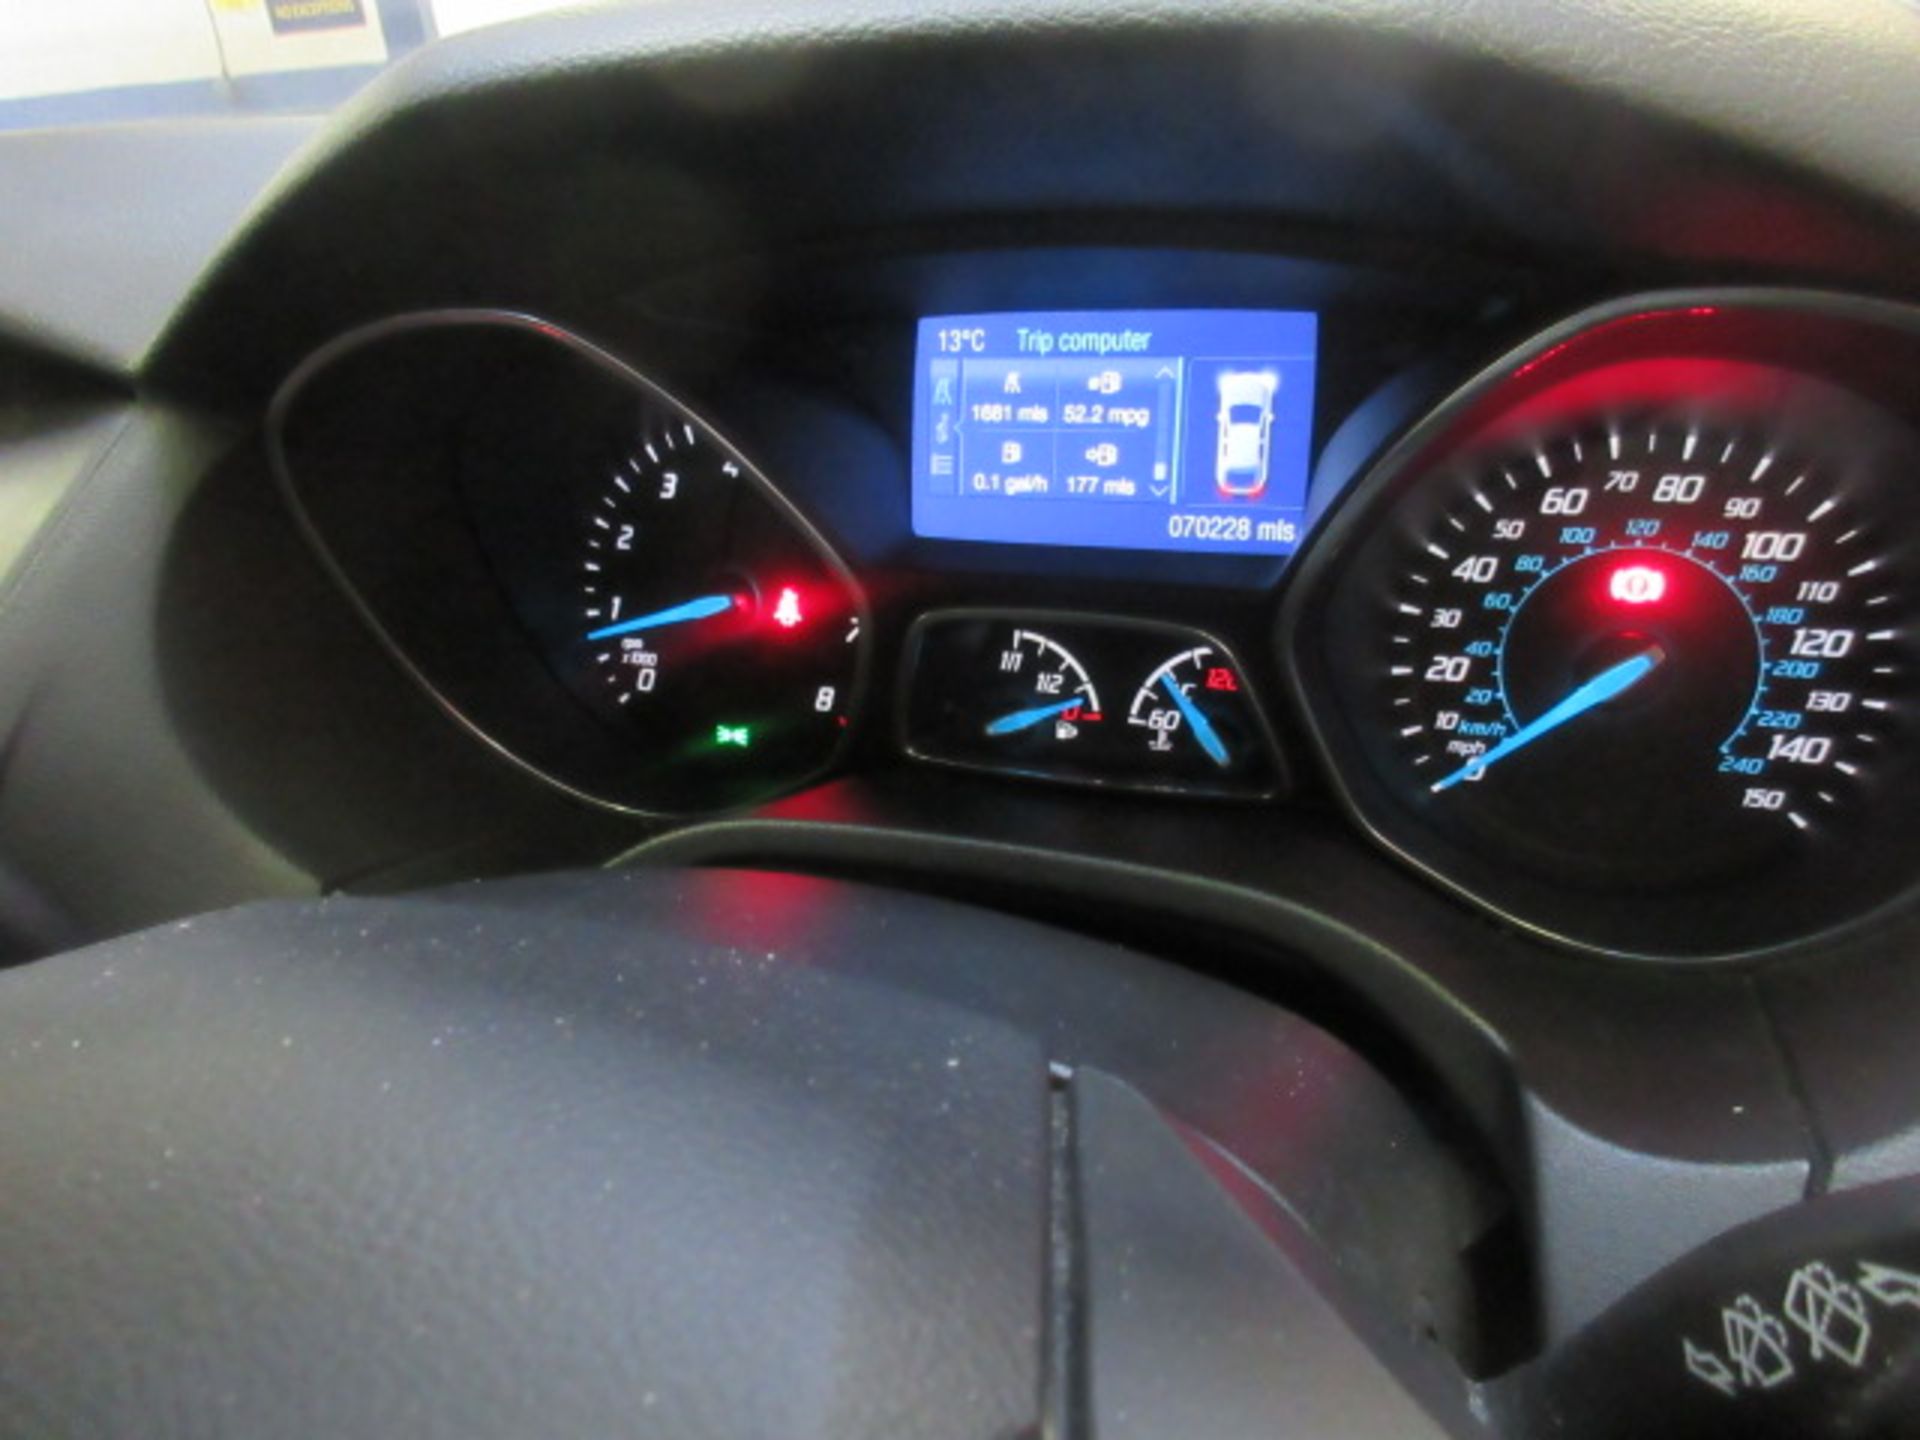 2014 Ford Focus Titanium Navigator - Image 11 of 13